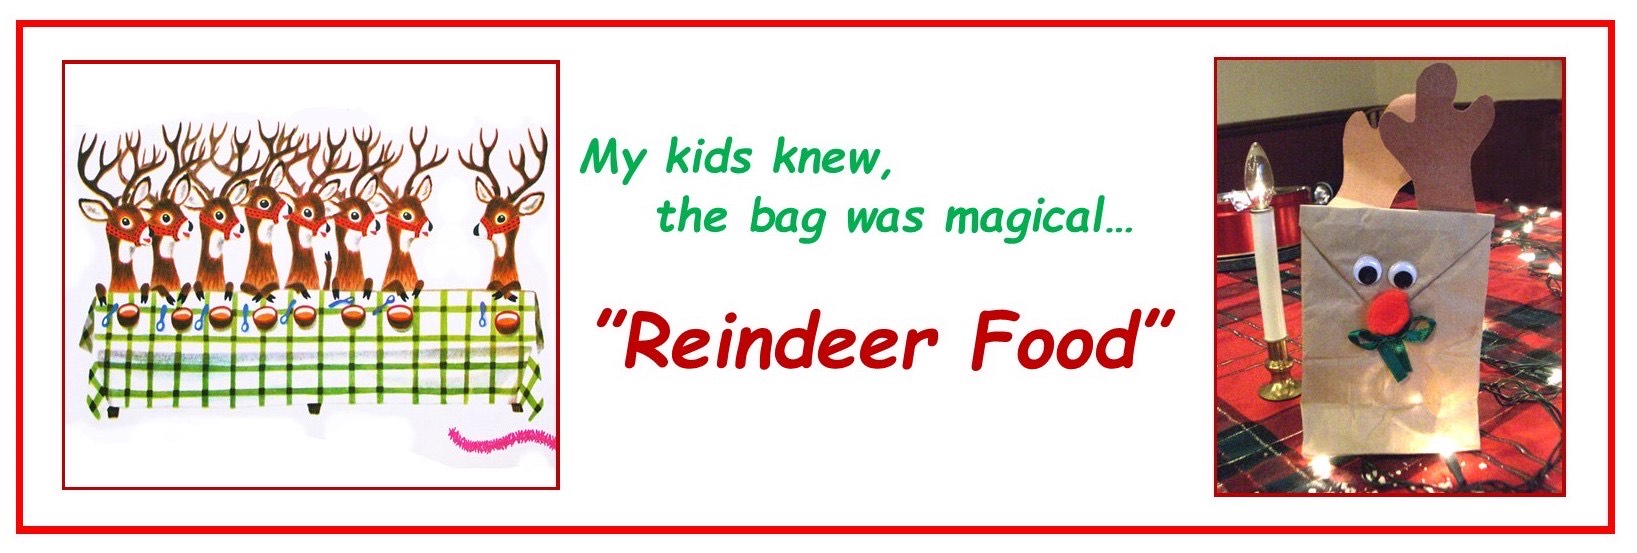 Reindeer Food?